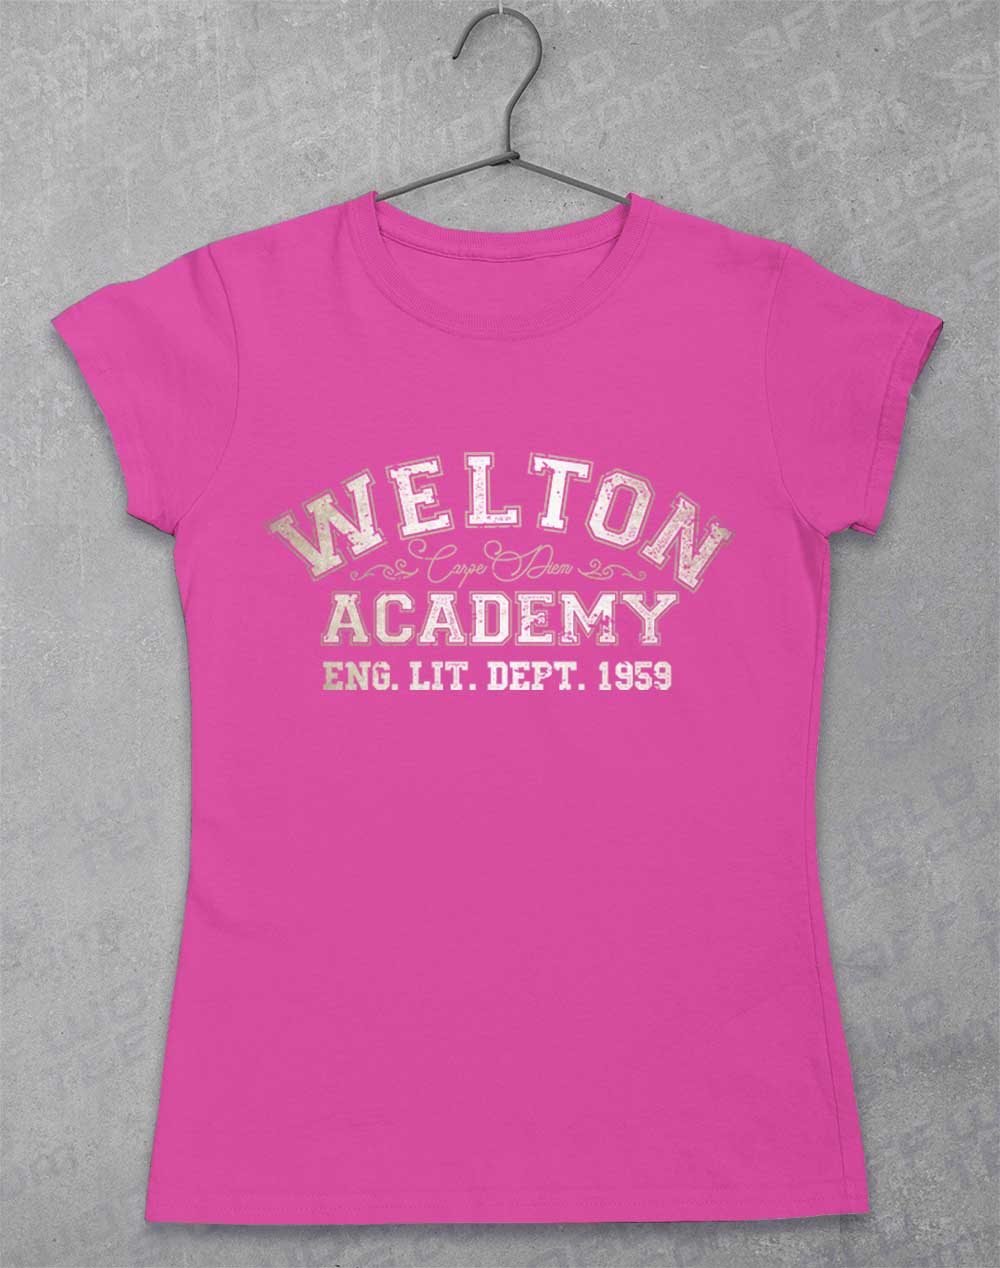 Azalea - Welton Academy Eng Lit Varsity 1959 Women's T-Shirt